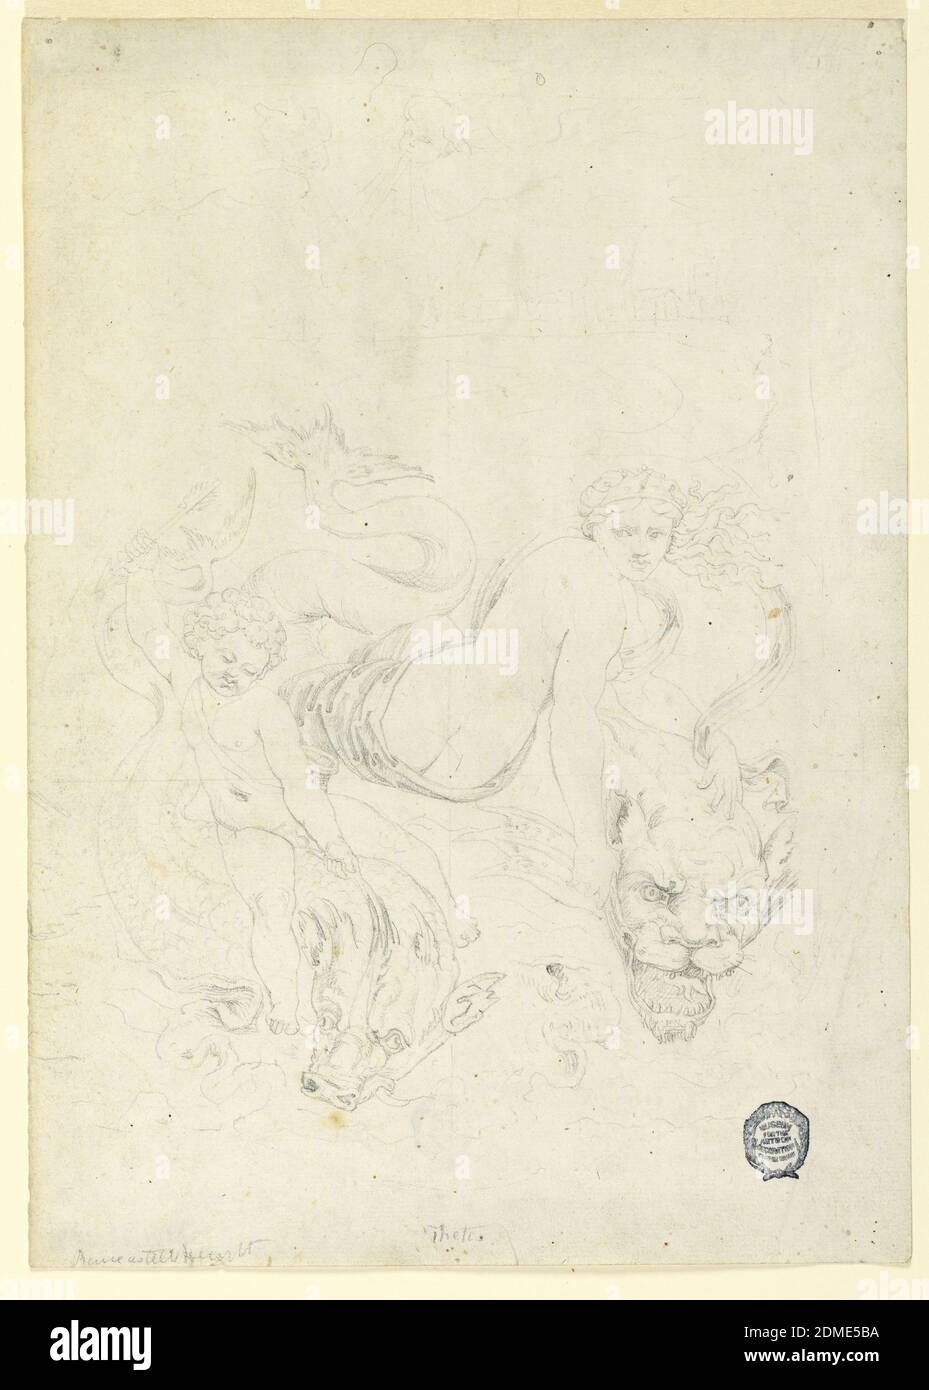 Thetis and Cupid Riding Fish, Fortunato Duranti, italienisch, 1787 - 1863, Graphit auf Papier, Cupid, links, hebt seine rechte Hand, in der er einen Pfeil hält, und reift mit der linken Hand die Flosse des Delphins, auf dem er reitet. Thetis sitzt mit dem Kopf nach vorne gequält, während sie die Flosse des Löwenkopfes hält, den sie reitet. Die Köpfe von zwei Putti, einer mit gepuspannten Lippen als wehend, sind oben abgebildet., Rom, Italien, ca. 1820, Klassizismus, Zeichnung Stockfoto